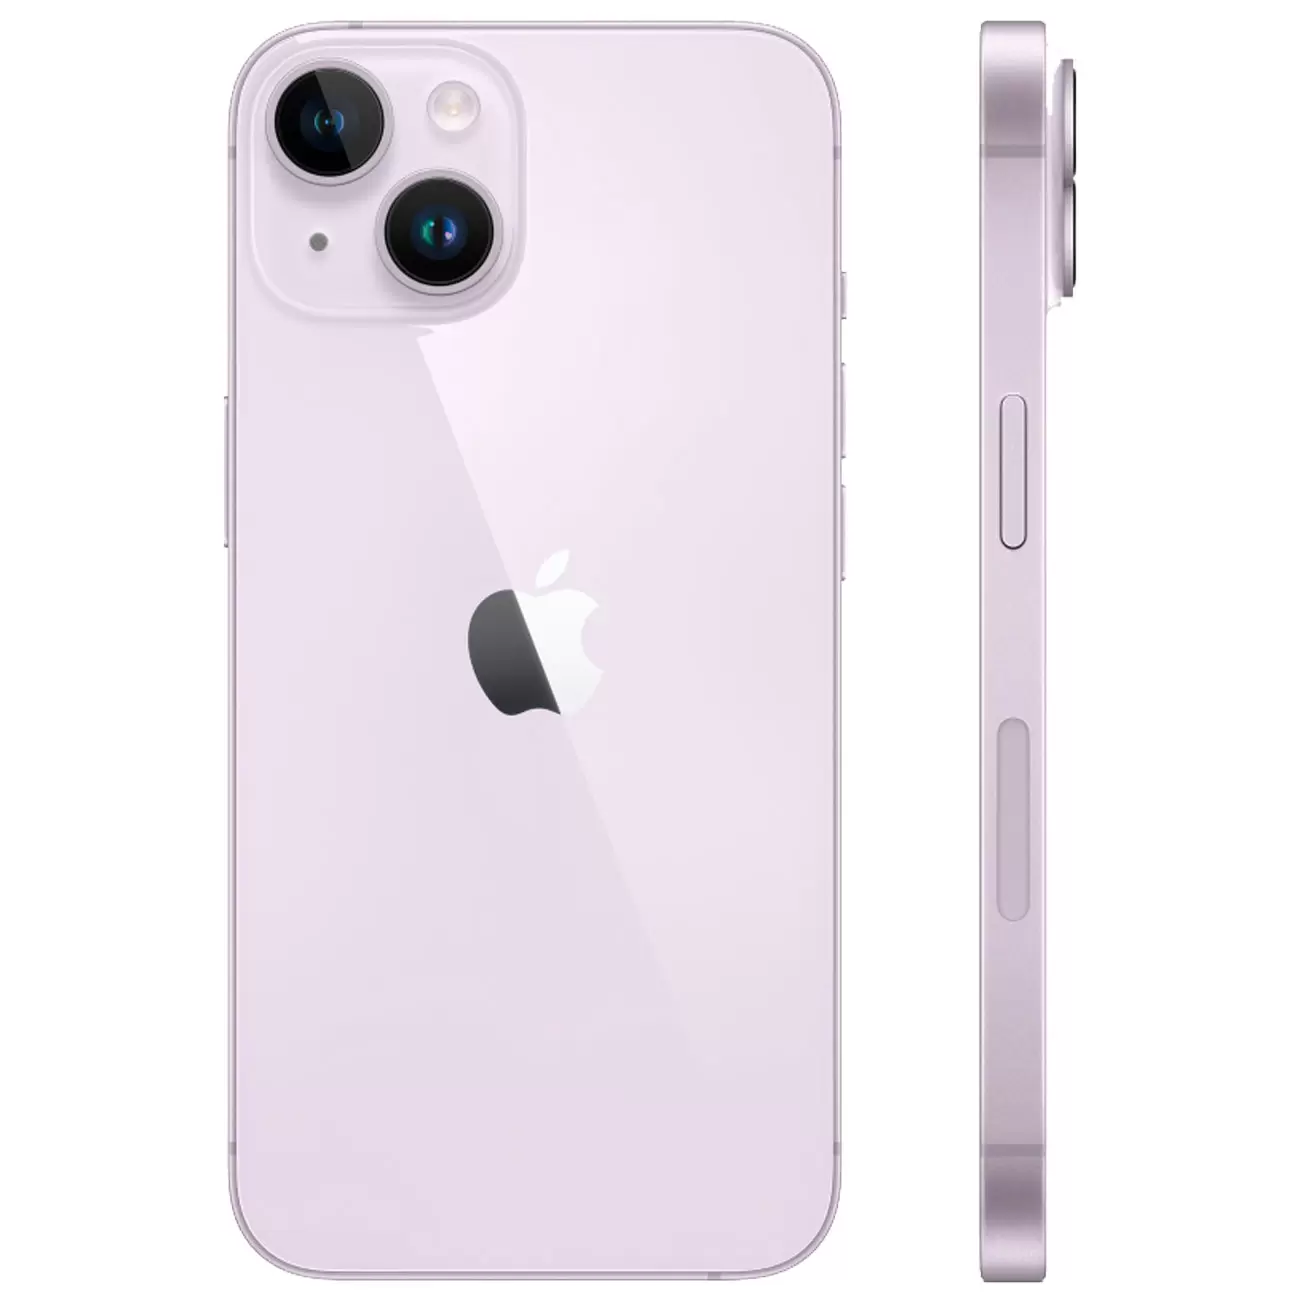 Купить смартфон apple iphone 14 256gb purple Apple iPhone 14 в официальном магазине Apple, Samsung, Xiaomi. iPixel.ru Купить, заказ, кредит, рассрочка, отзывы,  характеристики, цена,  фотографии, в подарок.